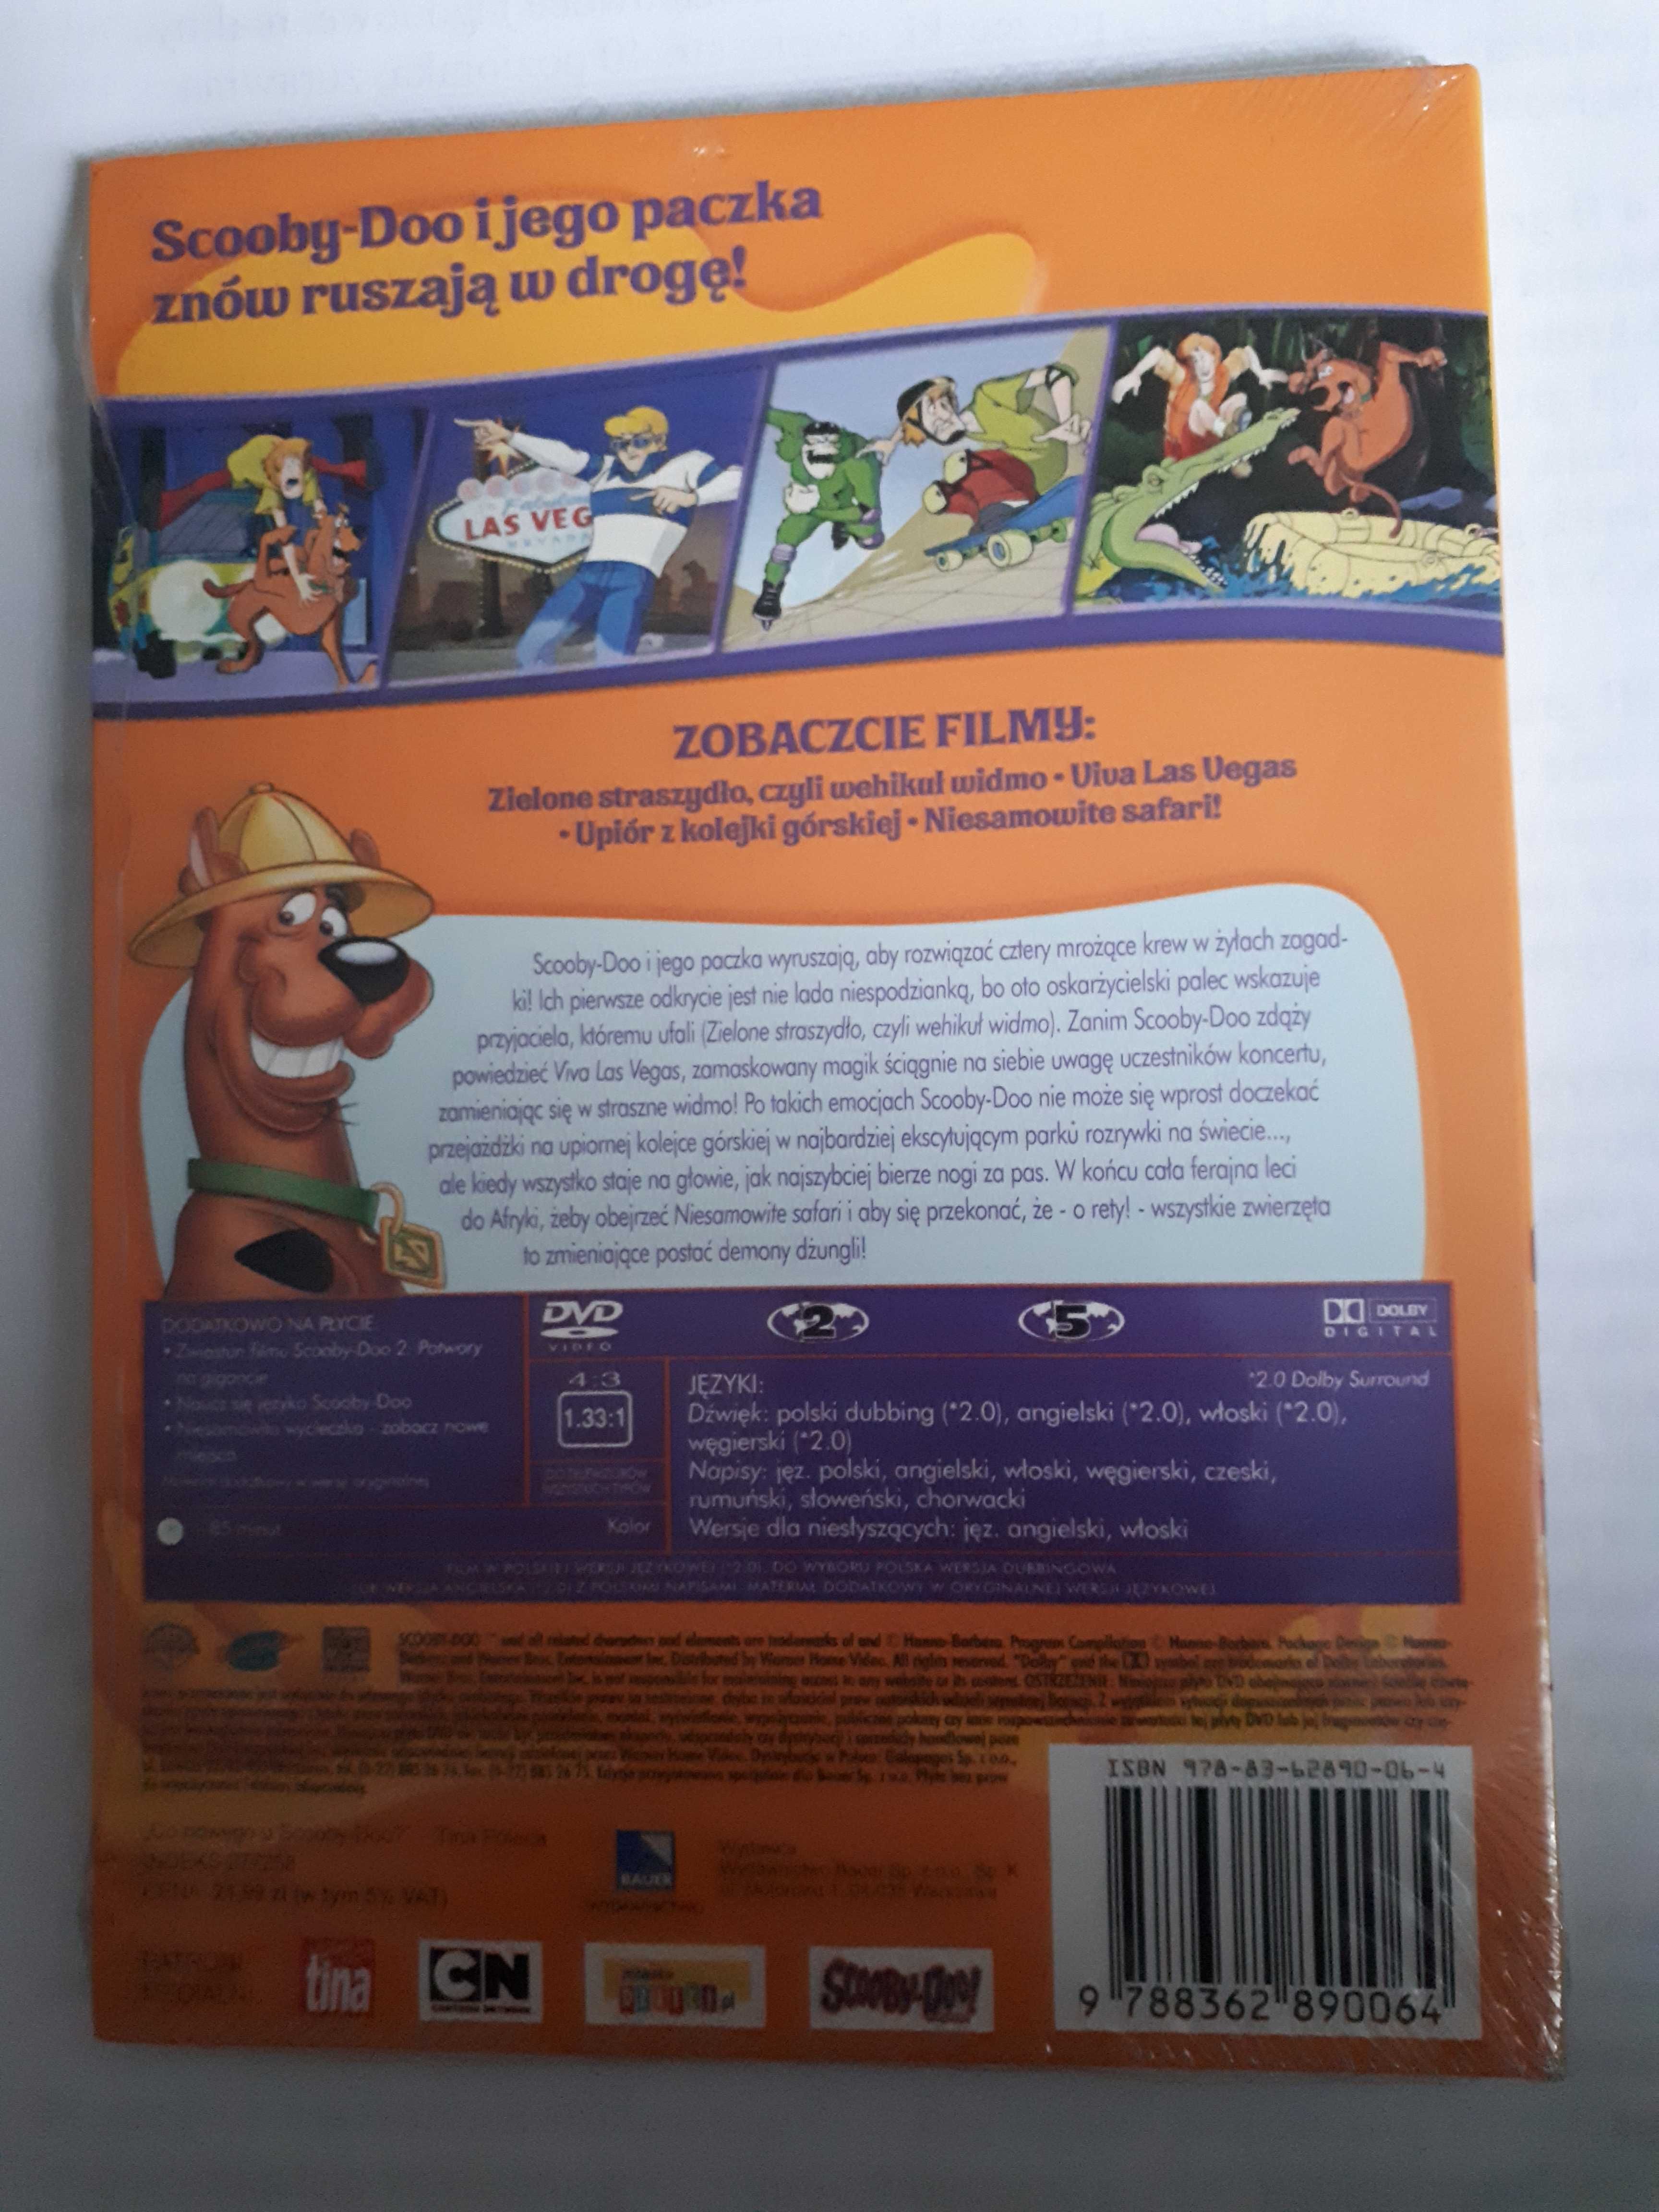 Co nowego u Scooby-Doo 2 Niesamowite Safari folia.